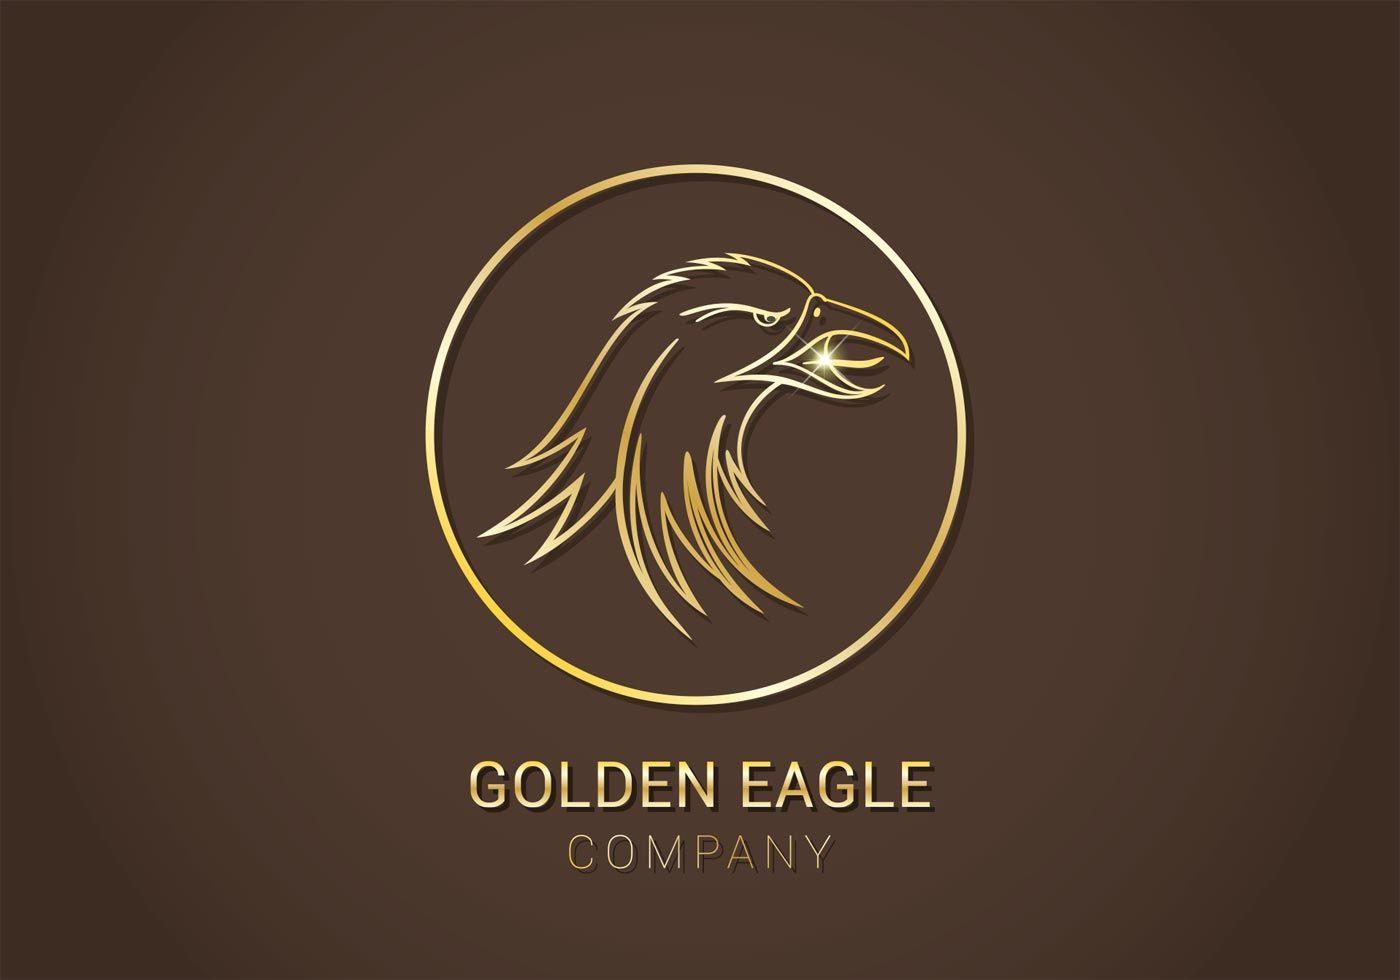 Gold Brown Company Logo - Golden eagle company Logos